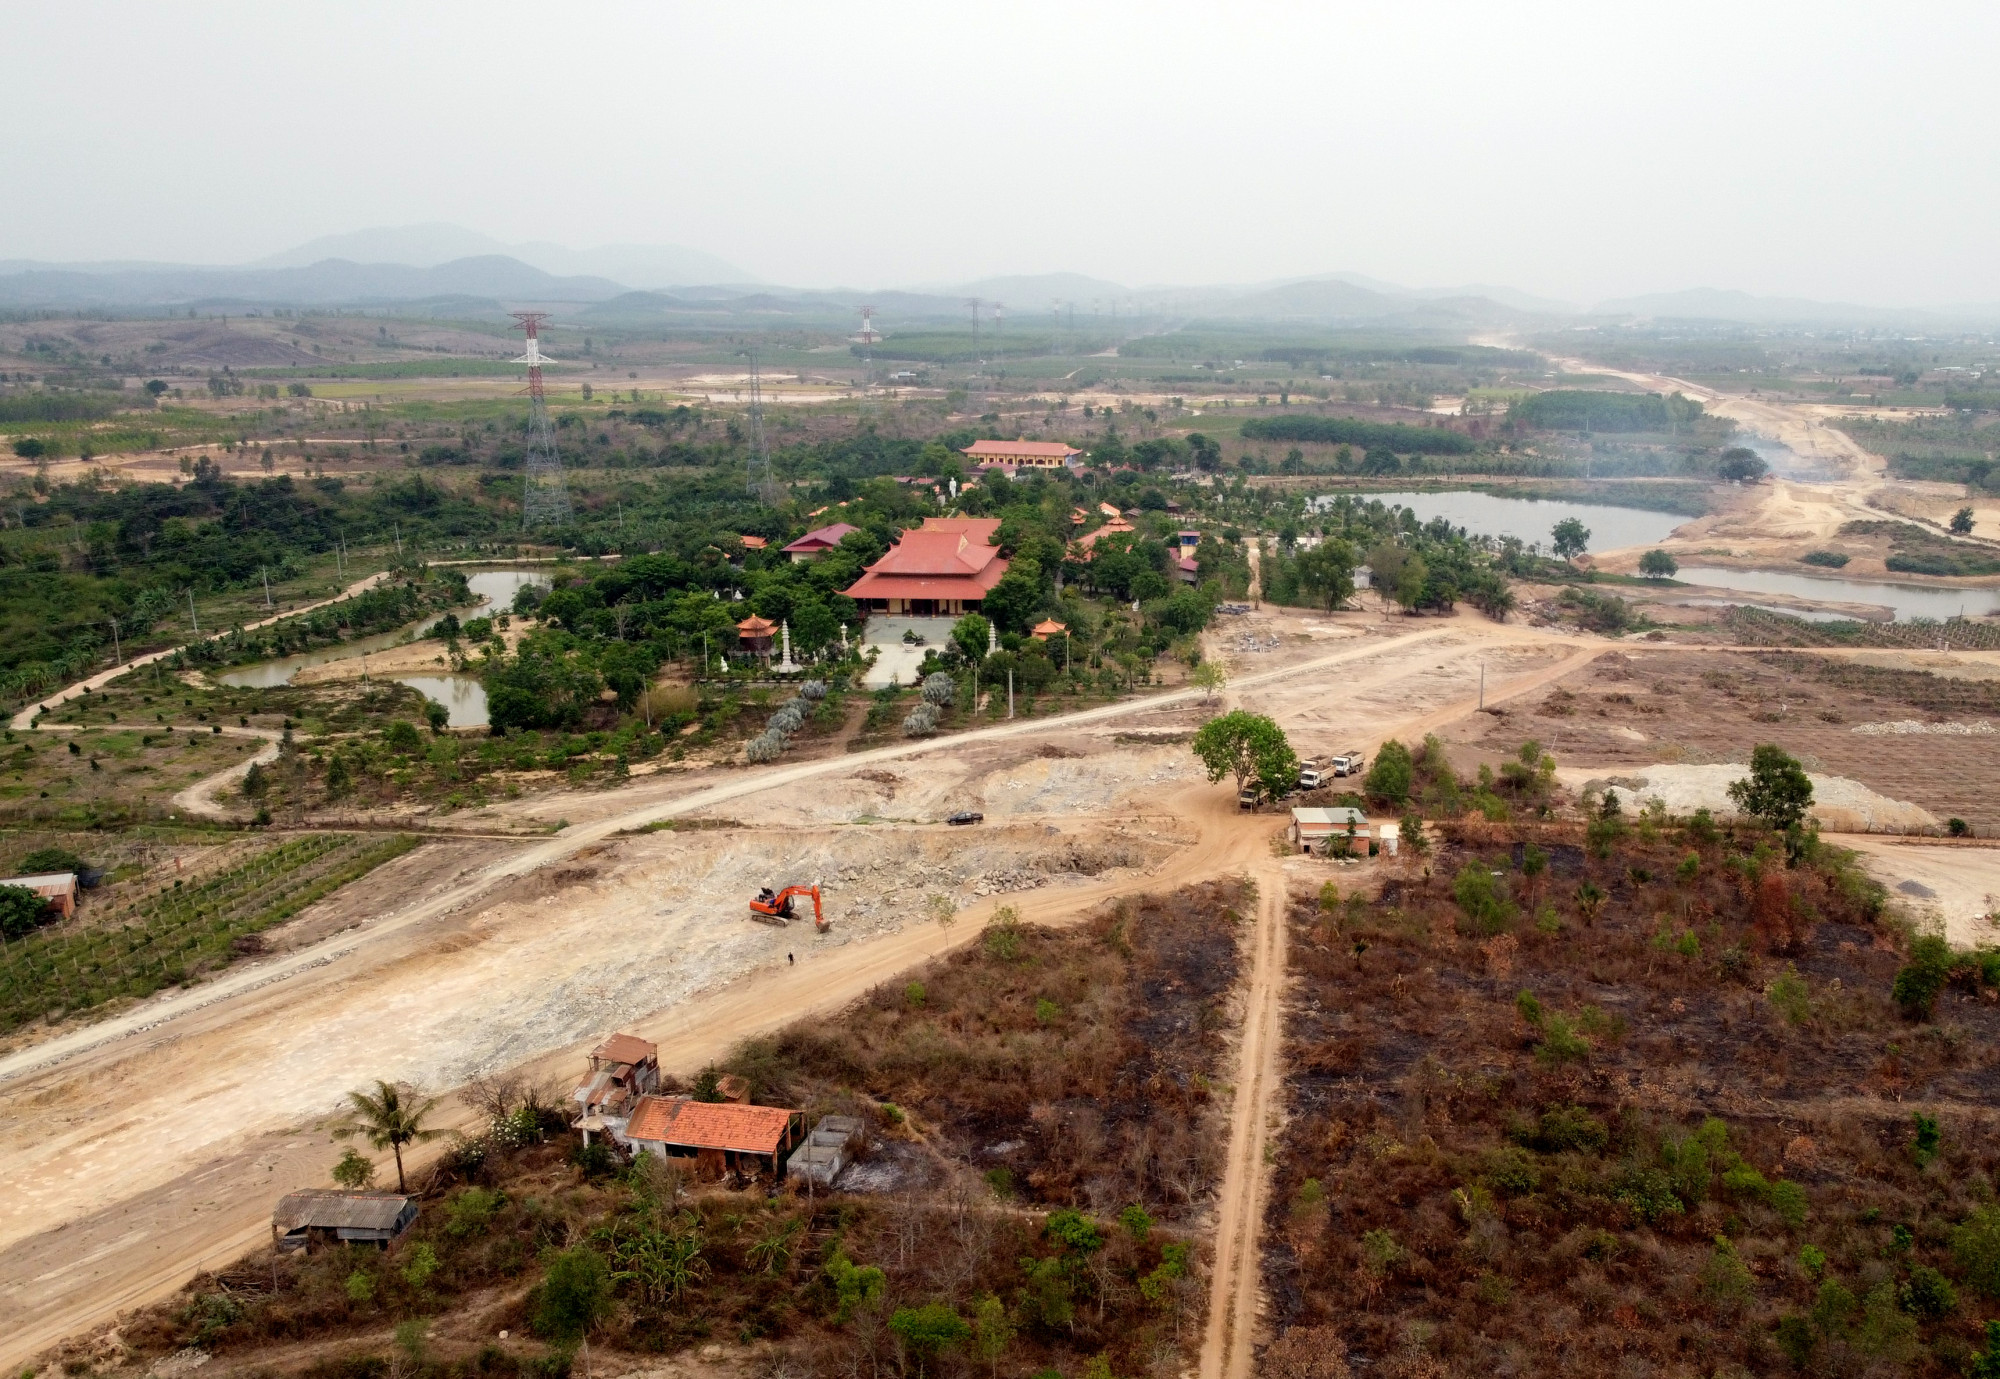 Việc giải phóng mặt bằng cao tốc Bắc - Nam qua địa phần tỉnh Bình Thuận đang có nhiều vướng mắc về việc bồi thường cũng như một số công trình hạ tầng kỹ thuật. Ảnh: Trường Nguyên